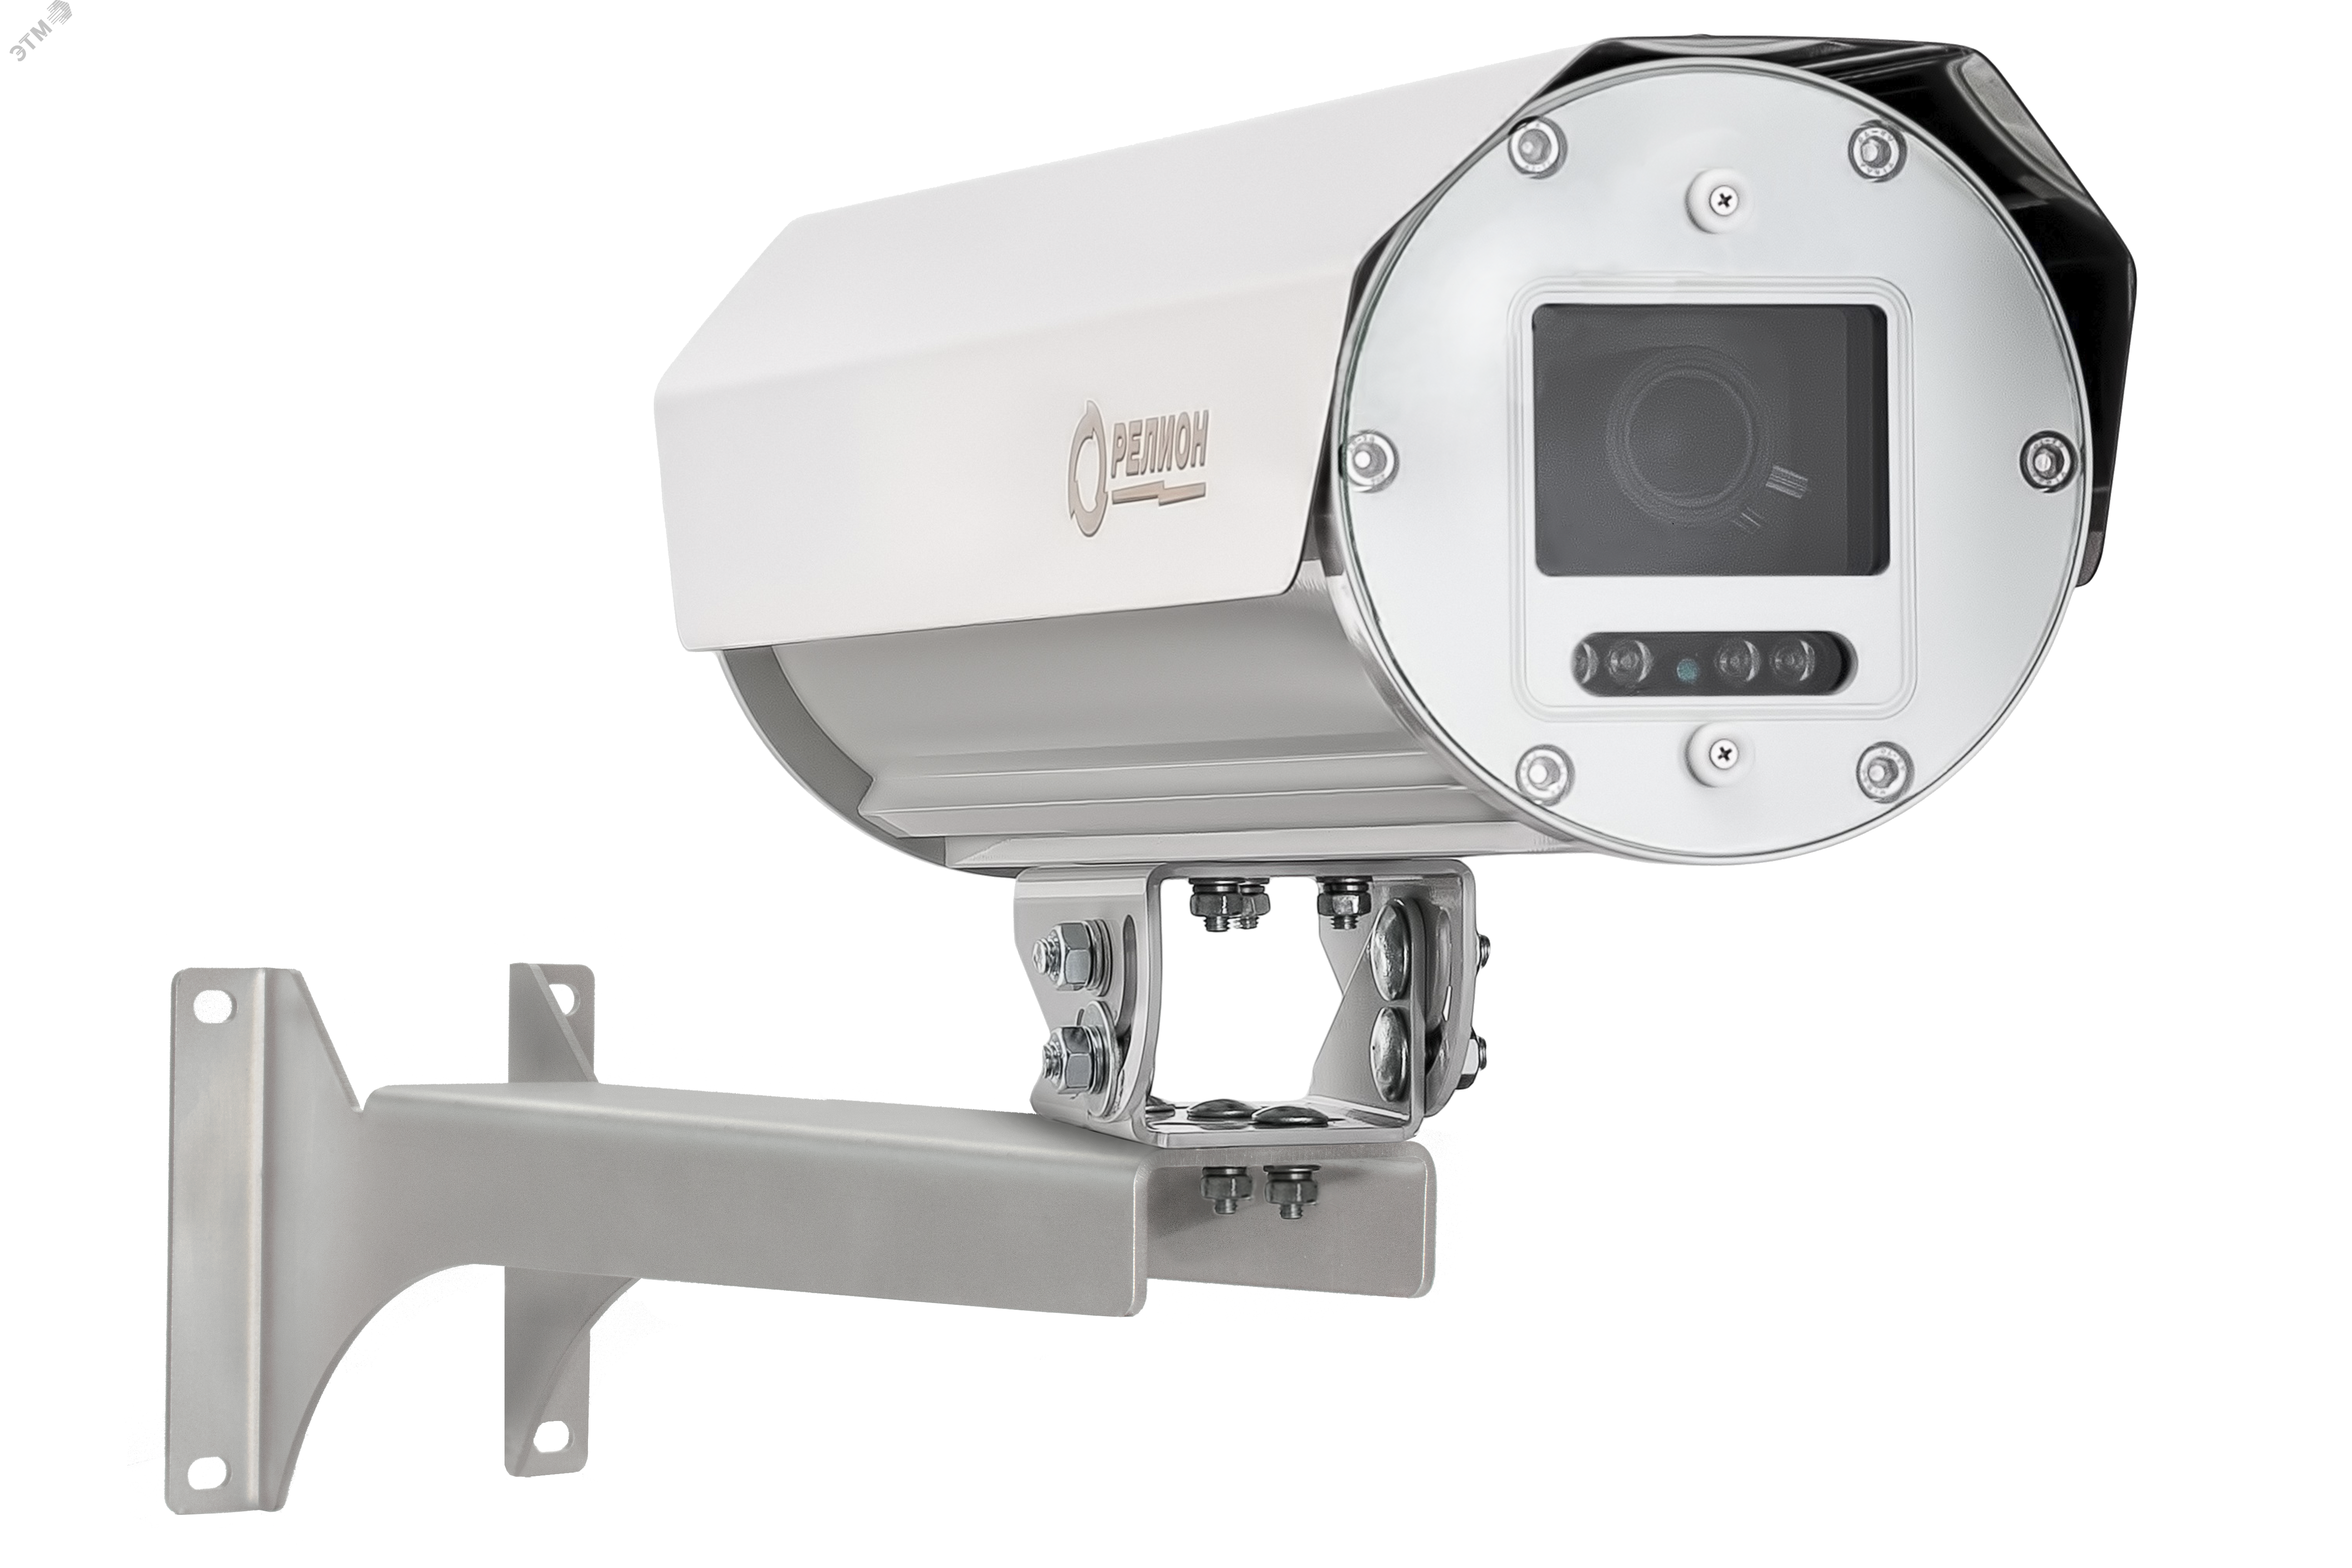 Термокожухи с встроенным ИК-прожектором -ТКВ-300-П-А-ИК исп. 09 для аналоговых и IP видеокамер из алюминиевого сплава. 00000008375 Релион